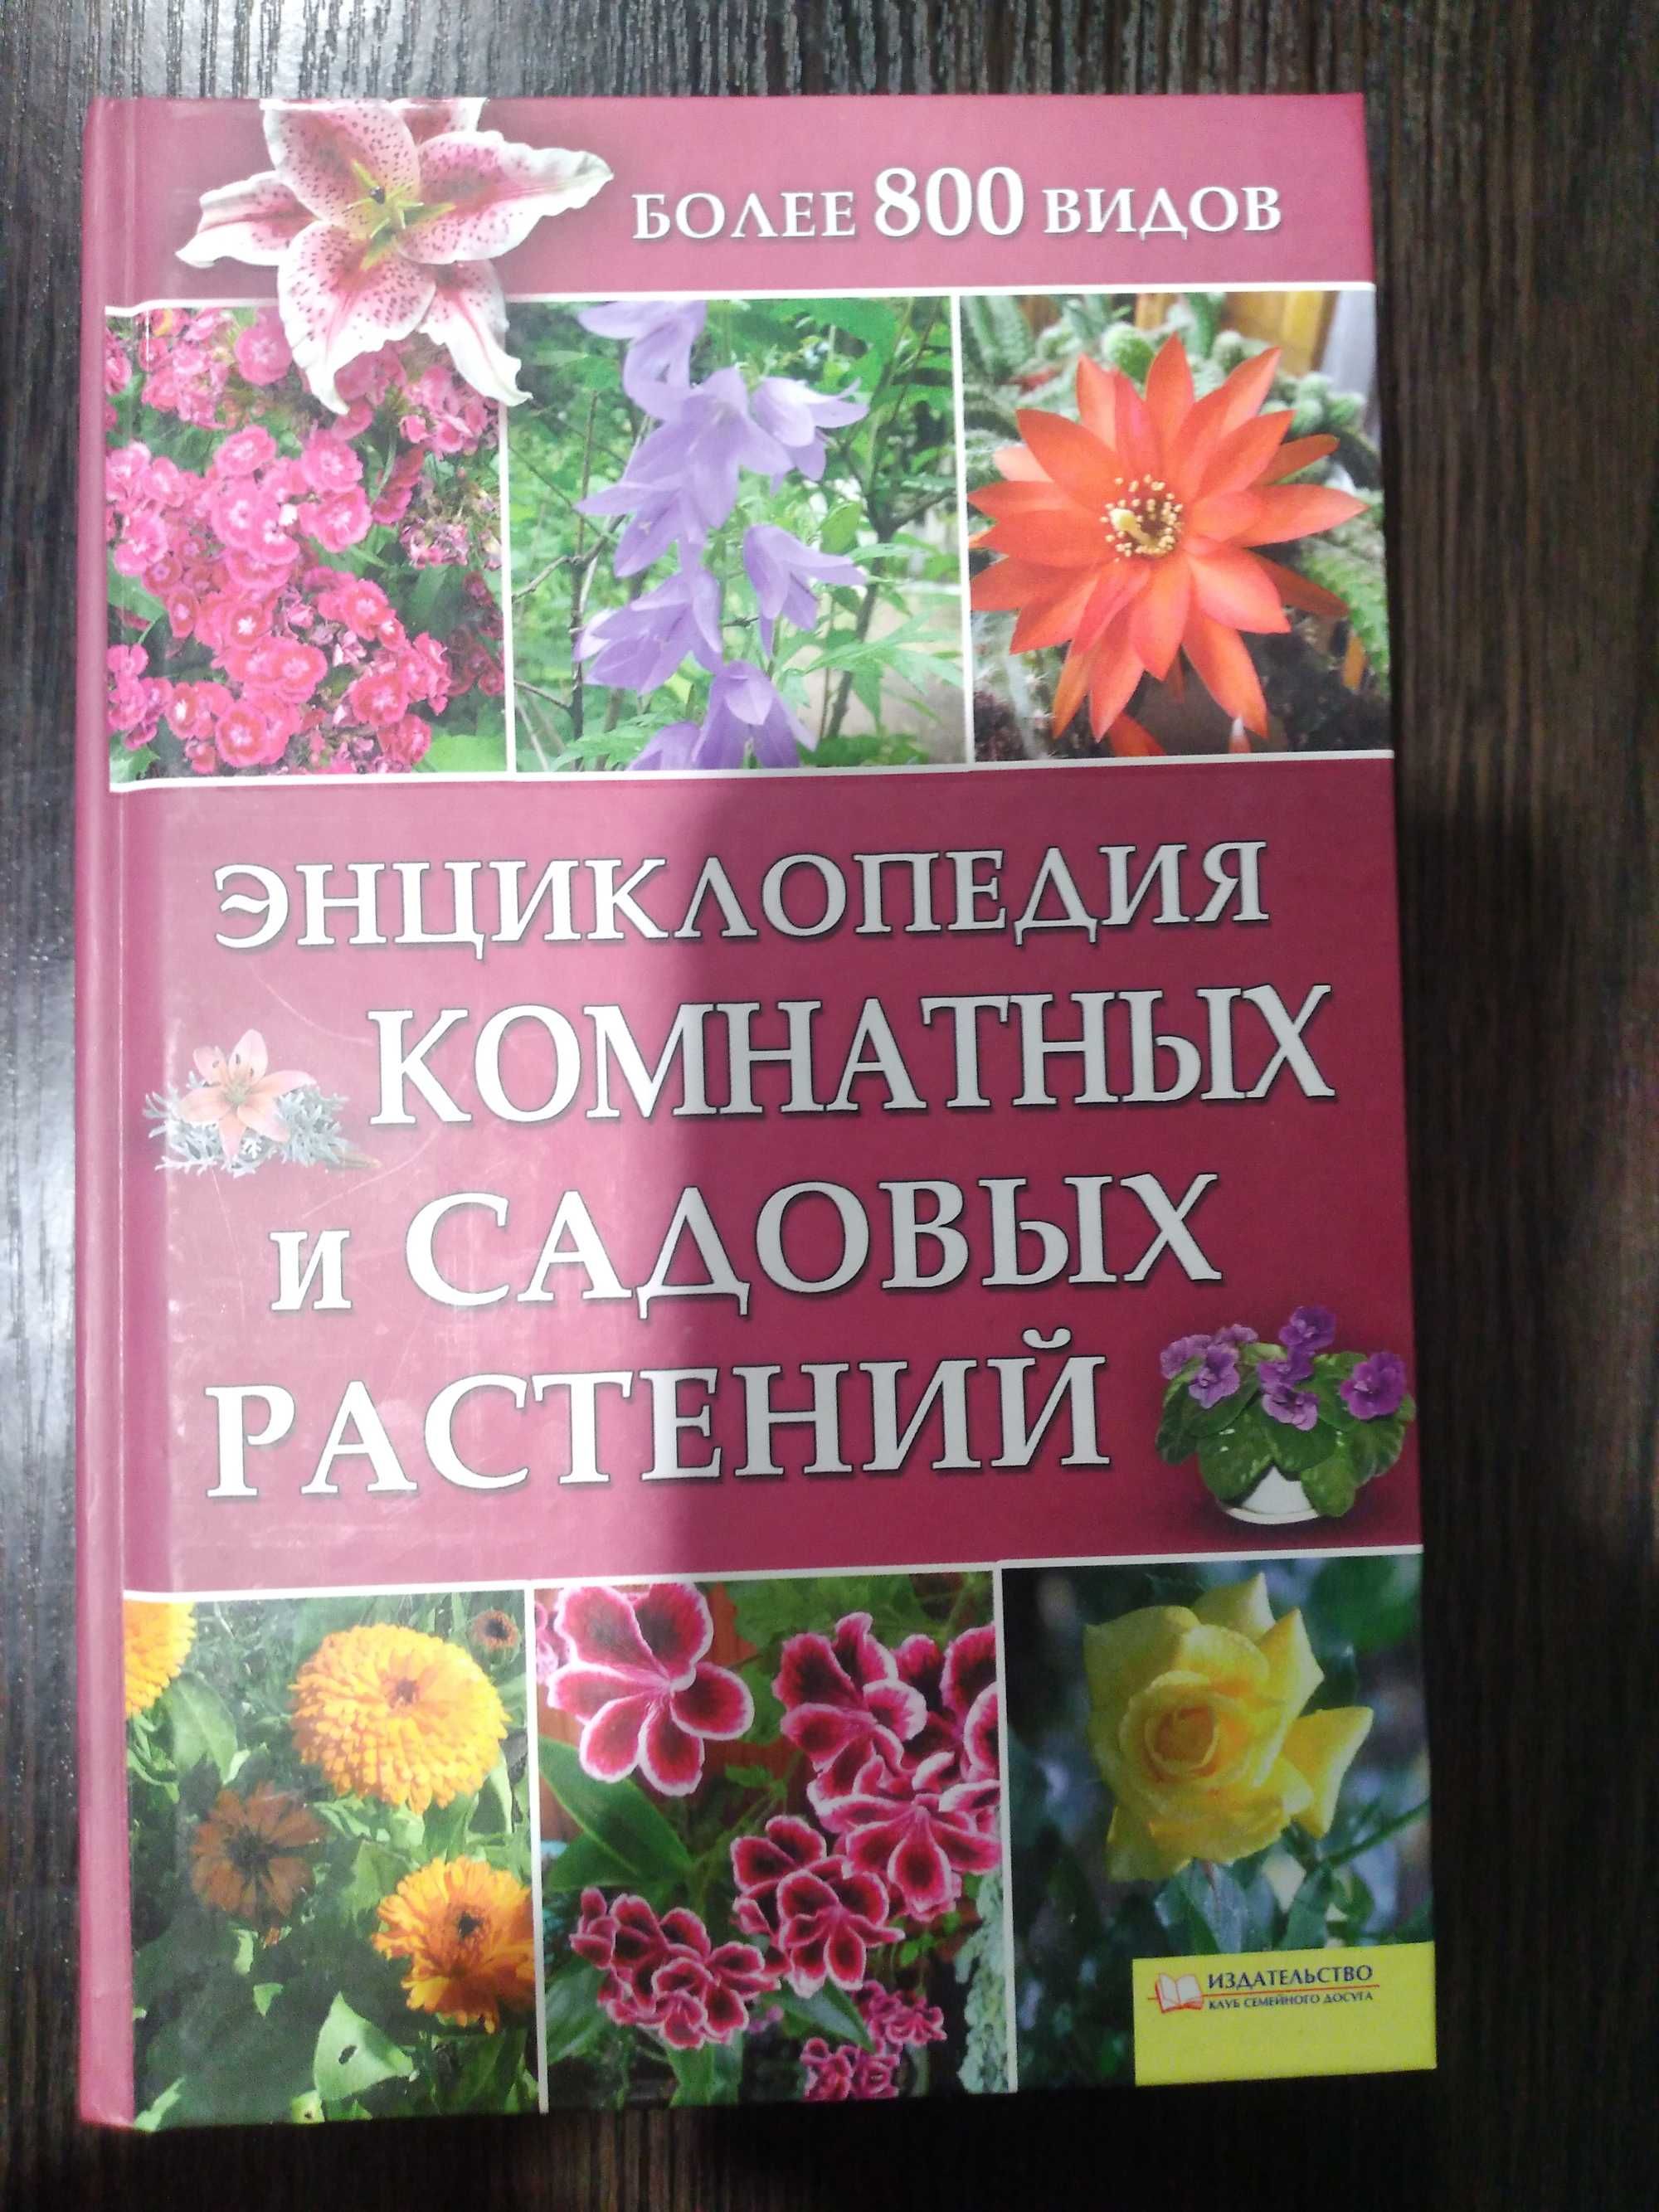 Книги про сад и огород, комнатные растения